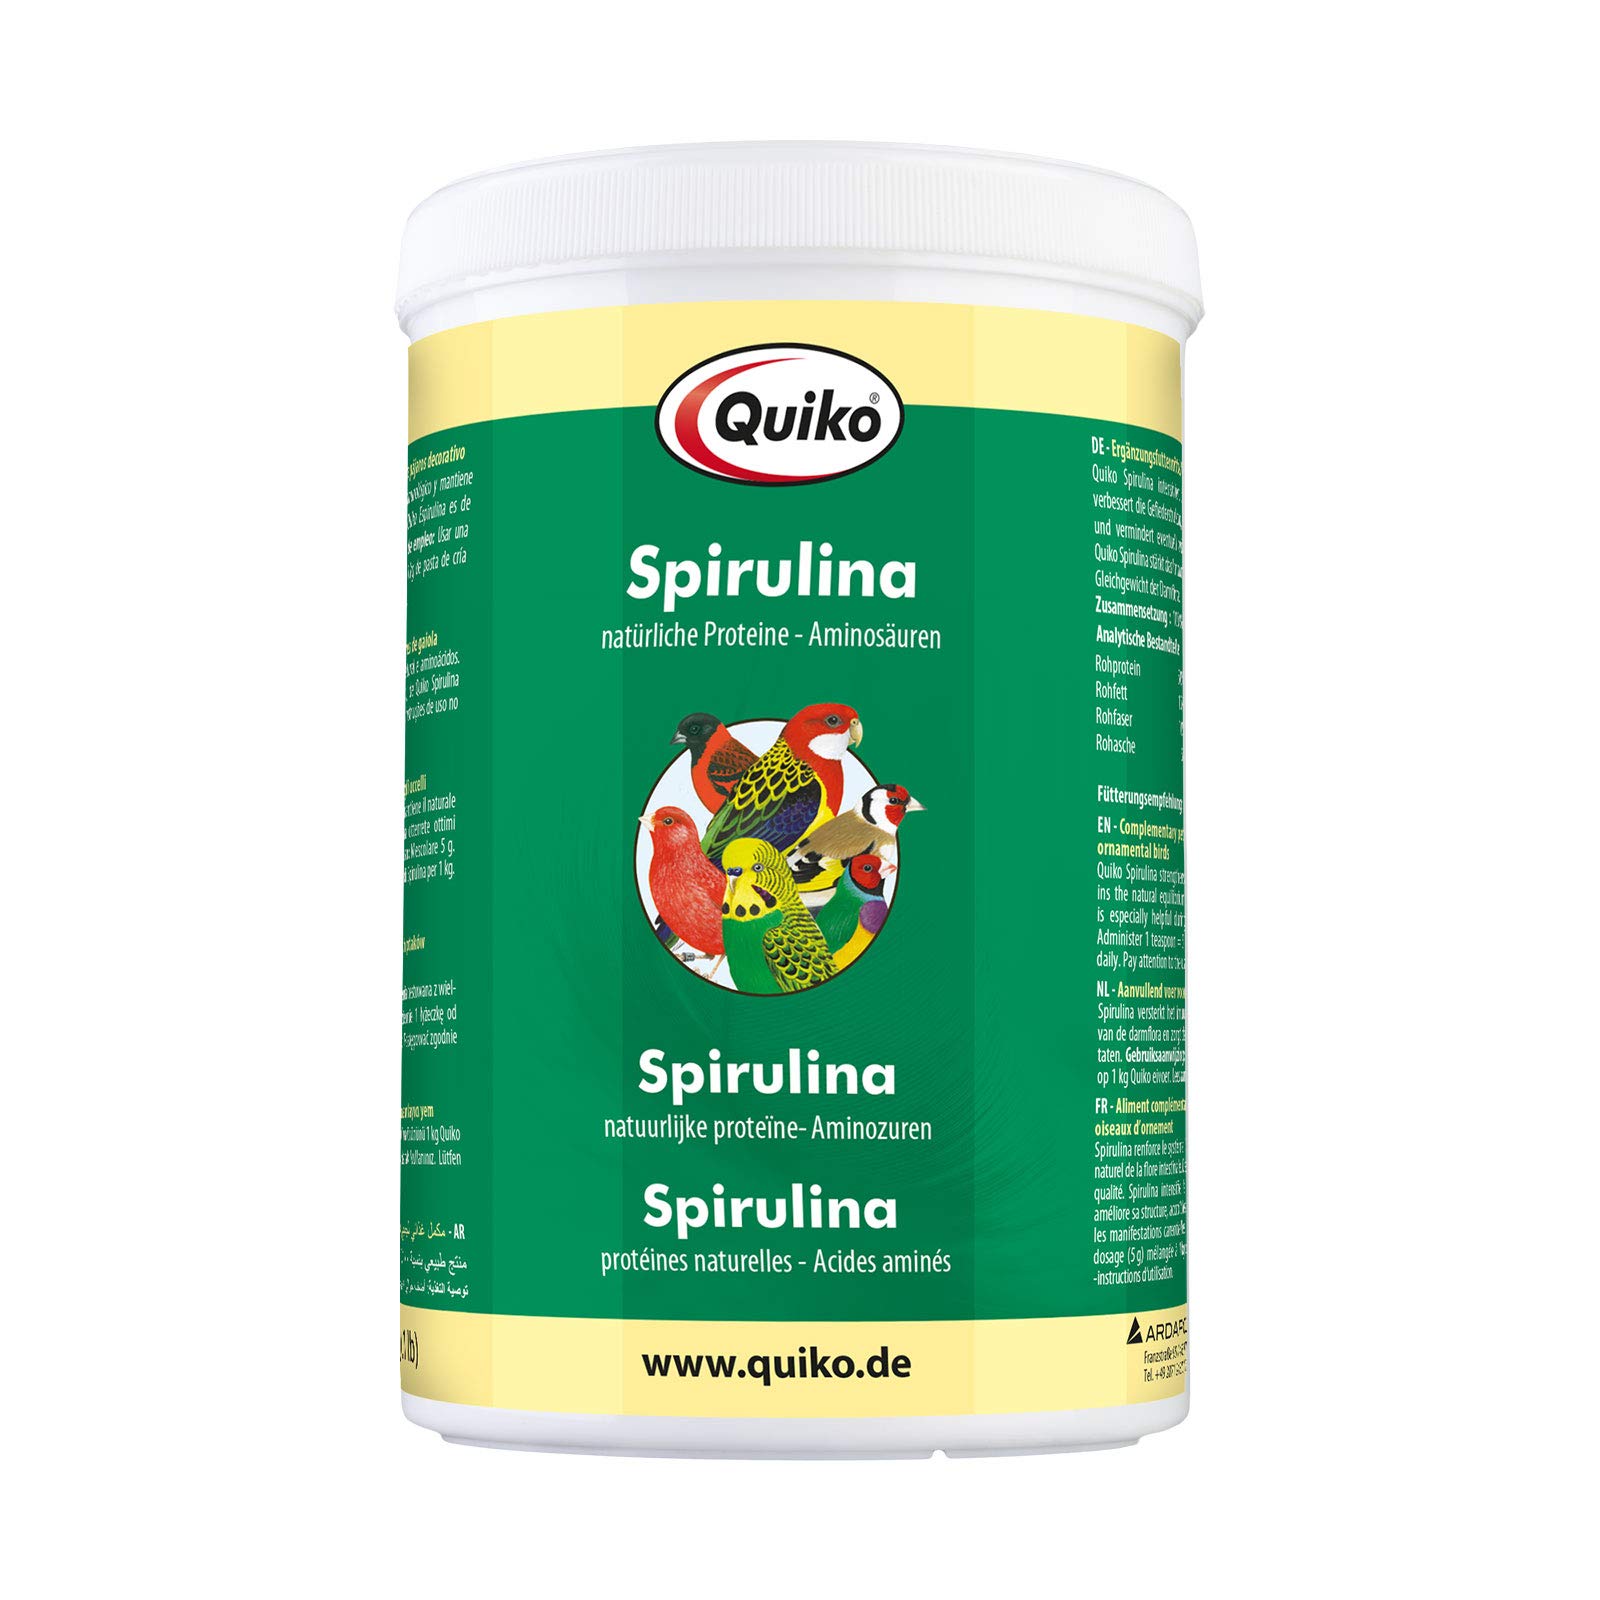 Quiko Spirulina 500g - Proteinreiches Einzelfutter für Ziervögel